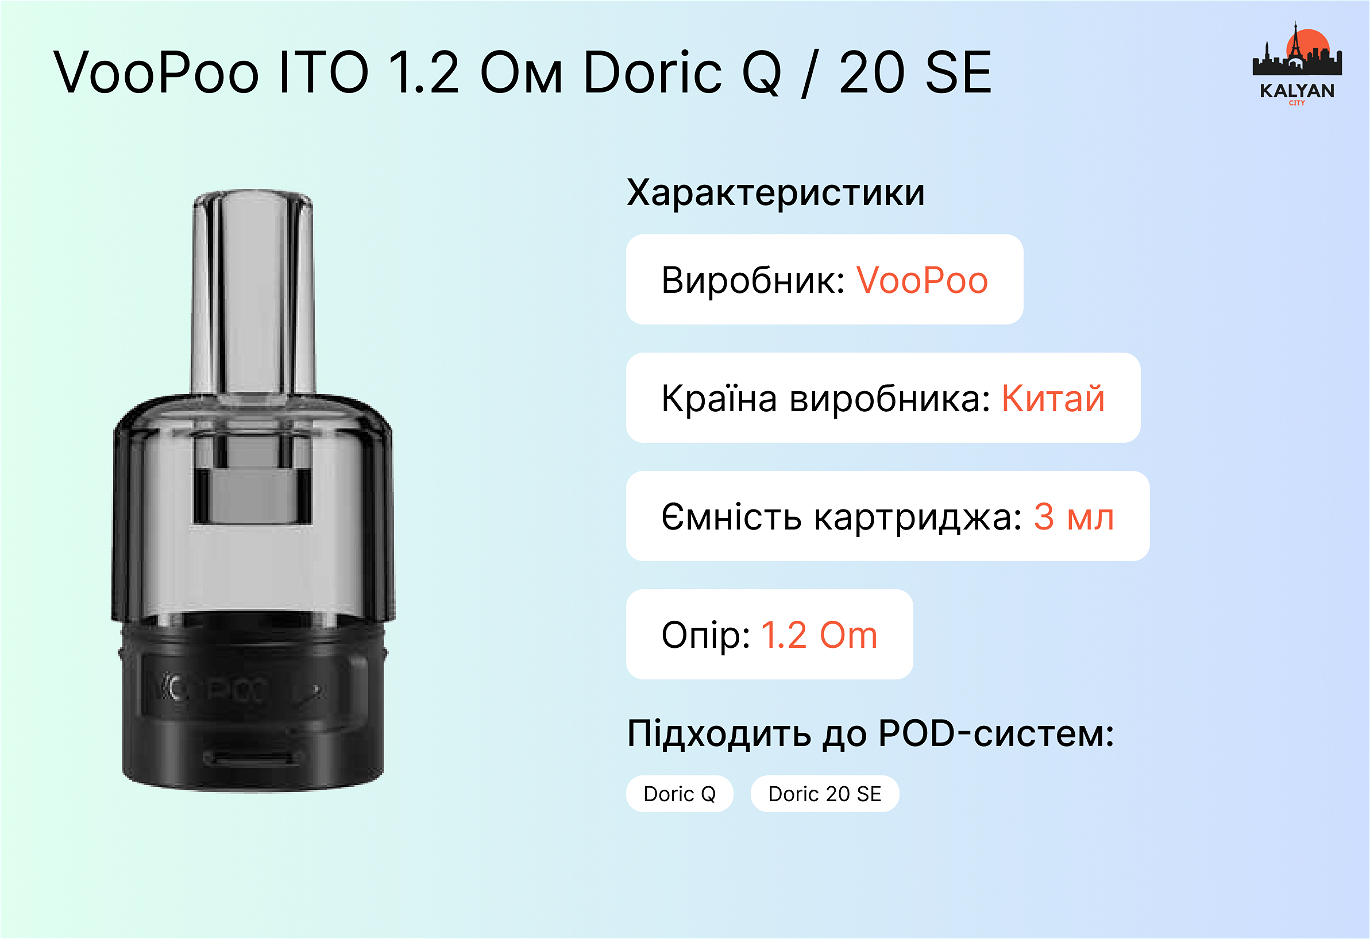 VooPoo ITO 1.2 Ом Doric Q / 20 SE Характеристики